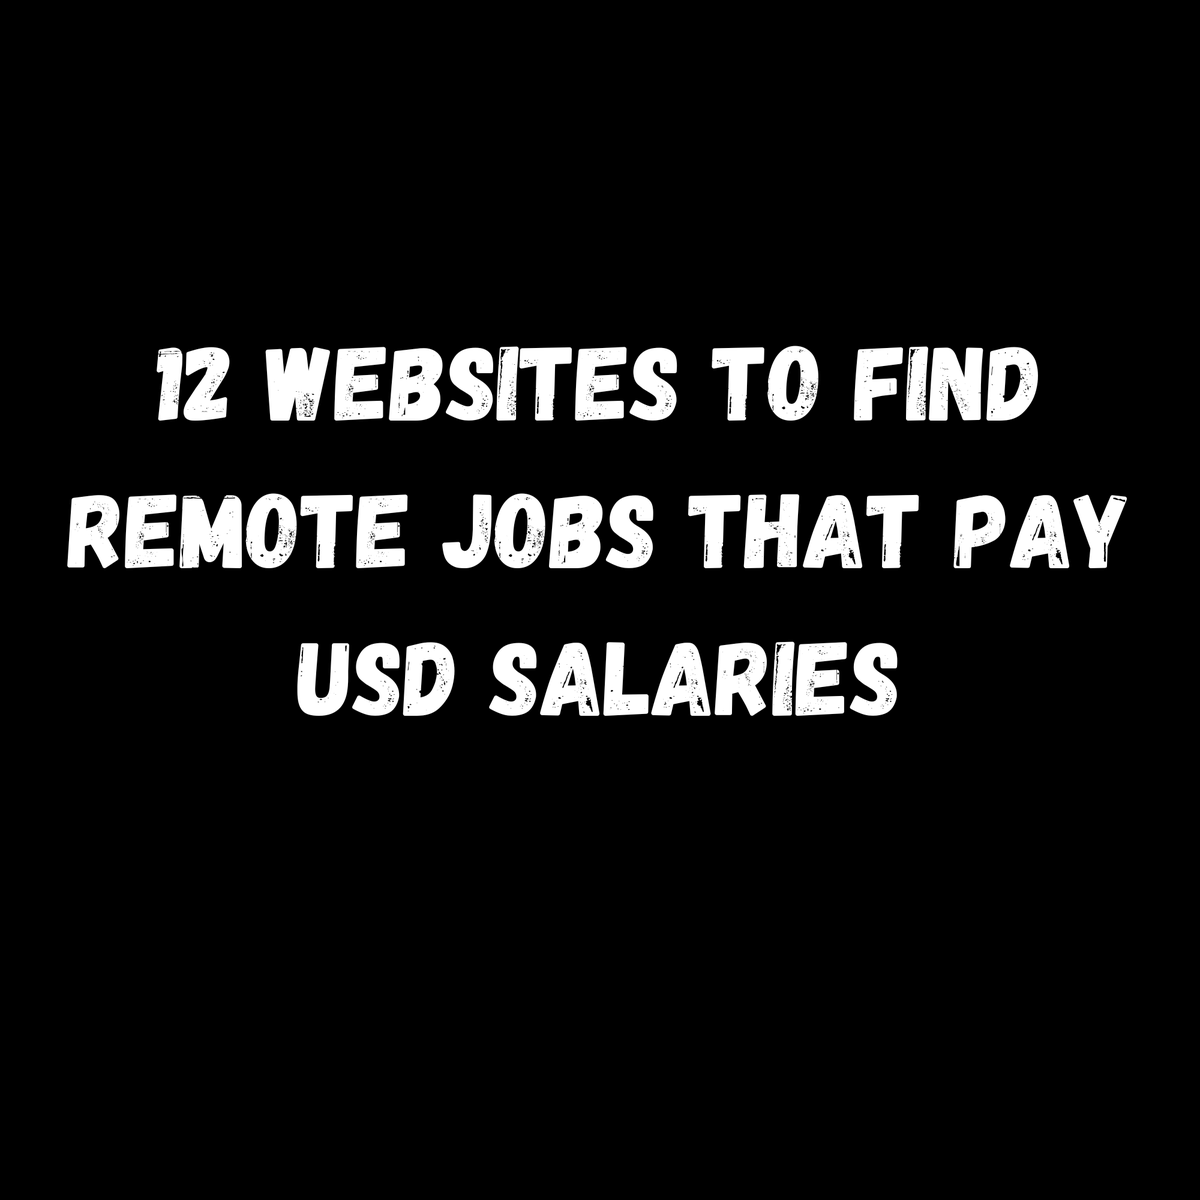 12 websites to find remote jobs that pay USD salaries
1. flexjobs. com
2. weworkremotely. com
3. remote. co
4. powertofly. com
5. workingnomads. com
6. toptal. com
7. upwork. com
8. freelancer. com
9. guru. com
10.remotive. com
11. nodesk. co
12. fiverr. com